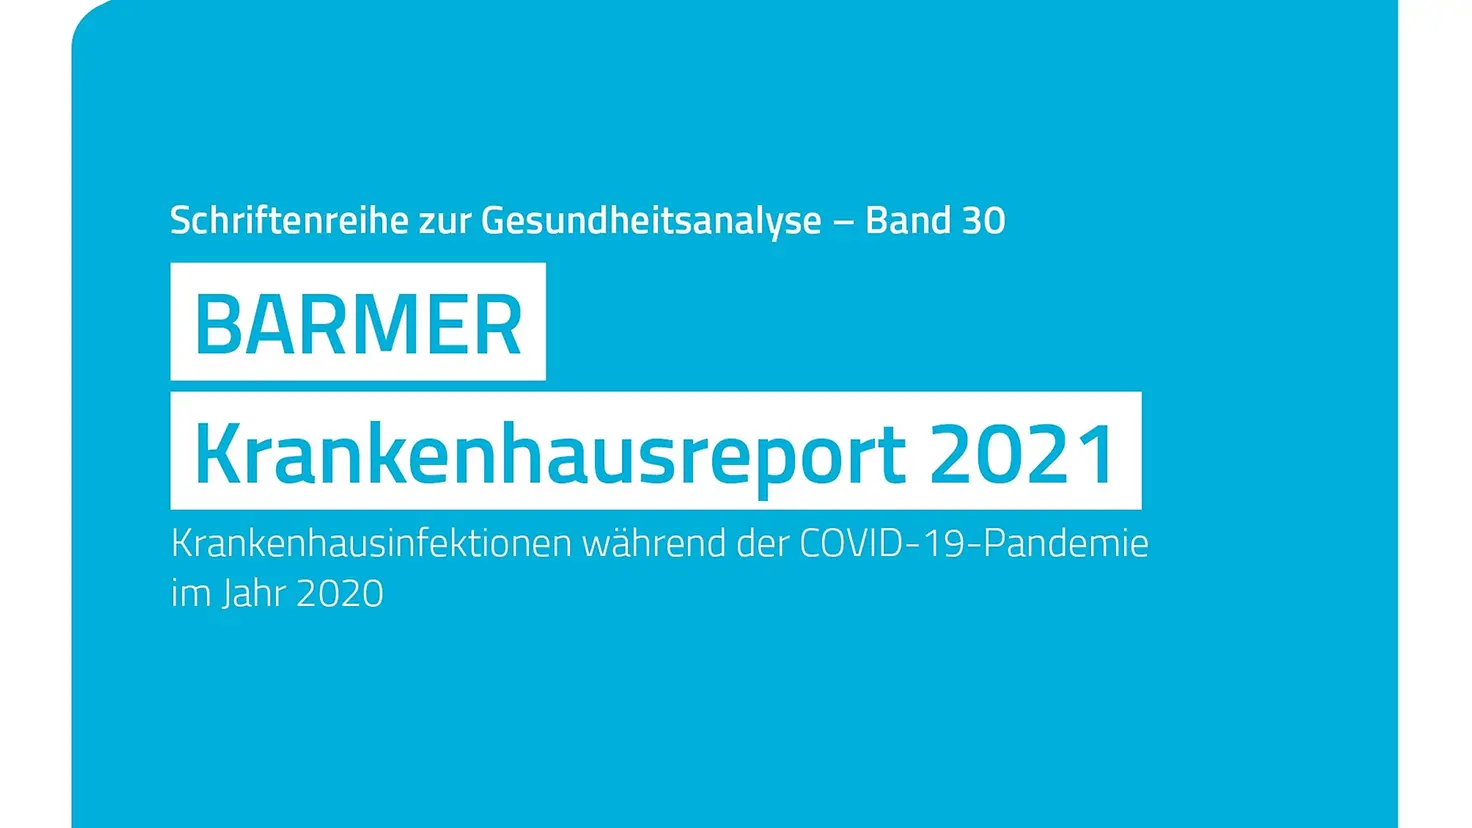 Das Bild zeigt das Deckblatt des Barmer-Krankenhausreports 2021